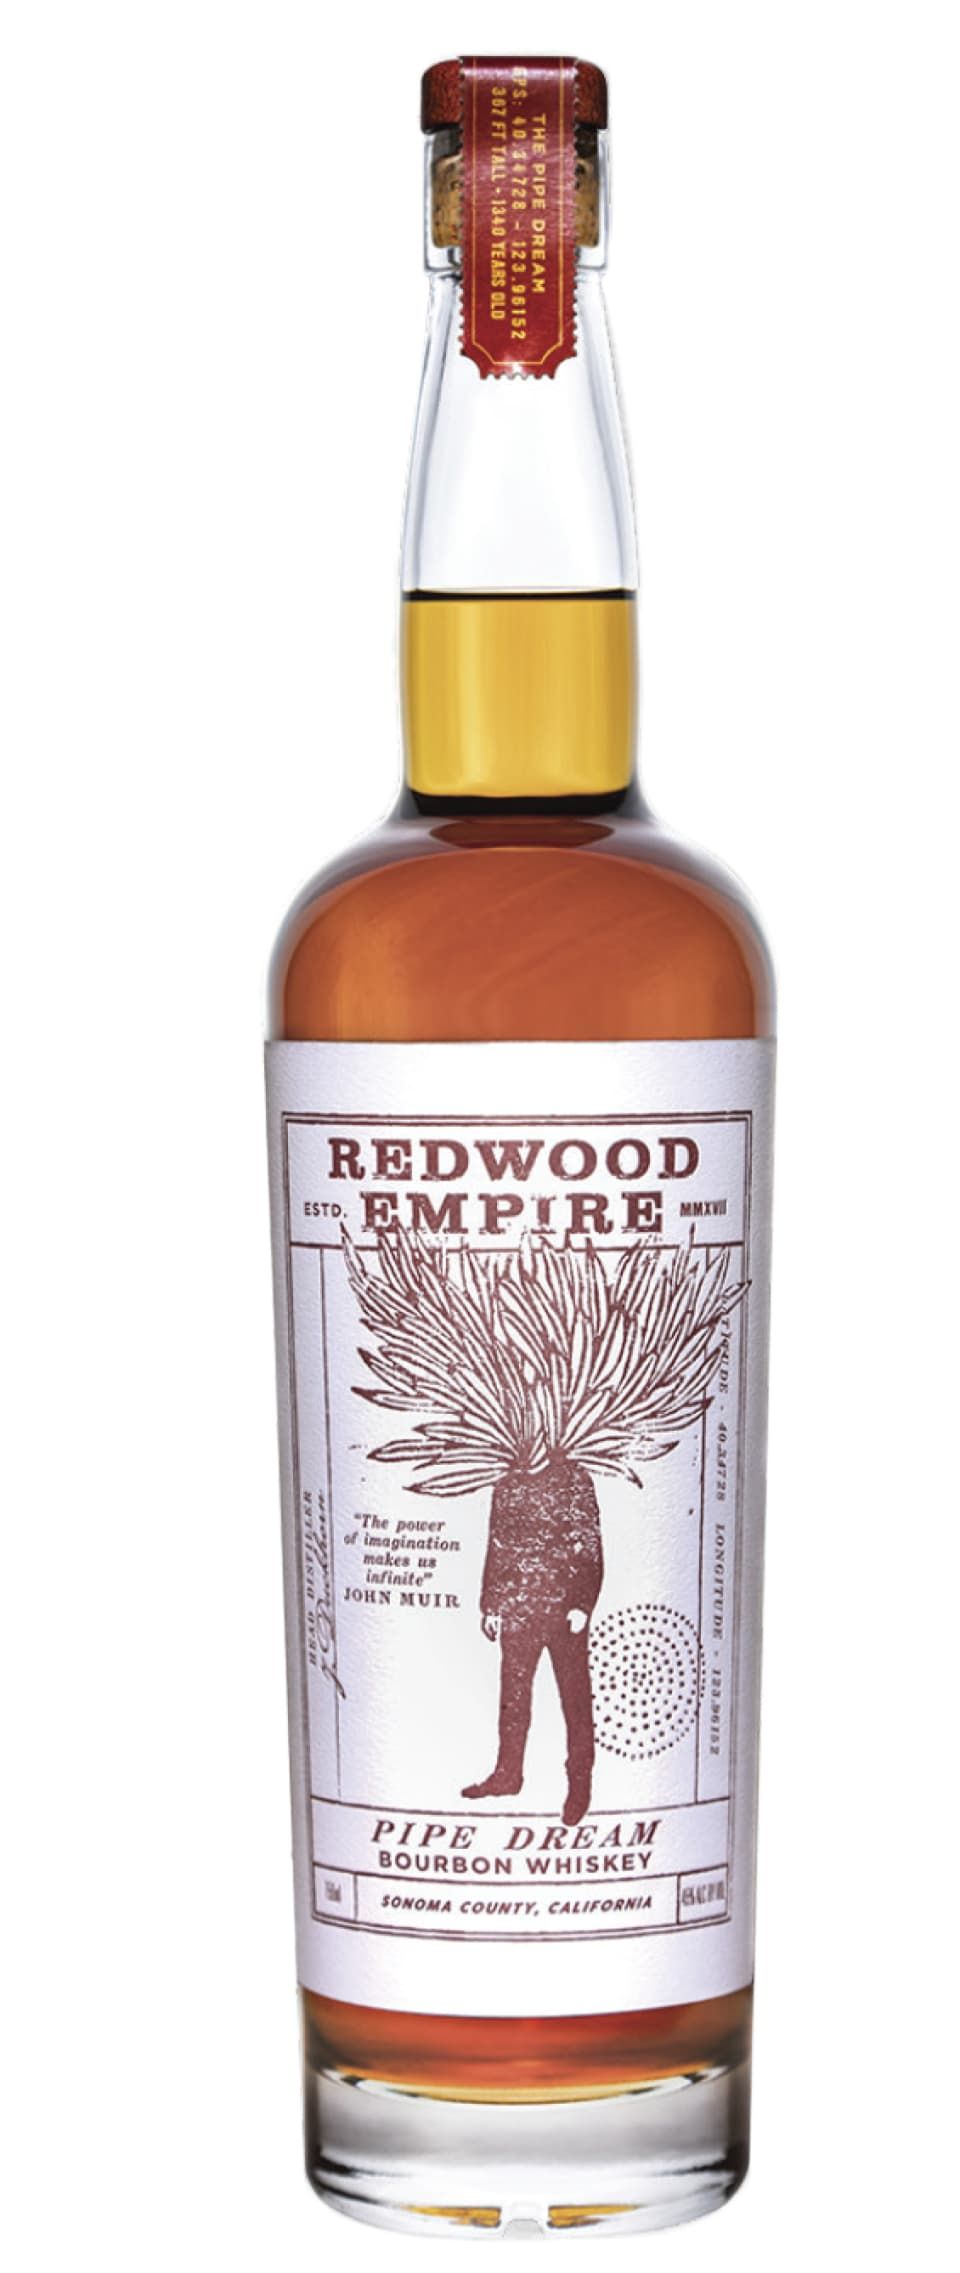 Redwood Empire Pipe Dream Bourbon Whiskey | Wine.com | Wine.com